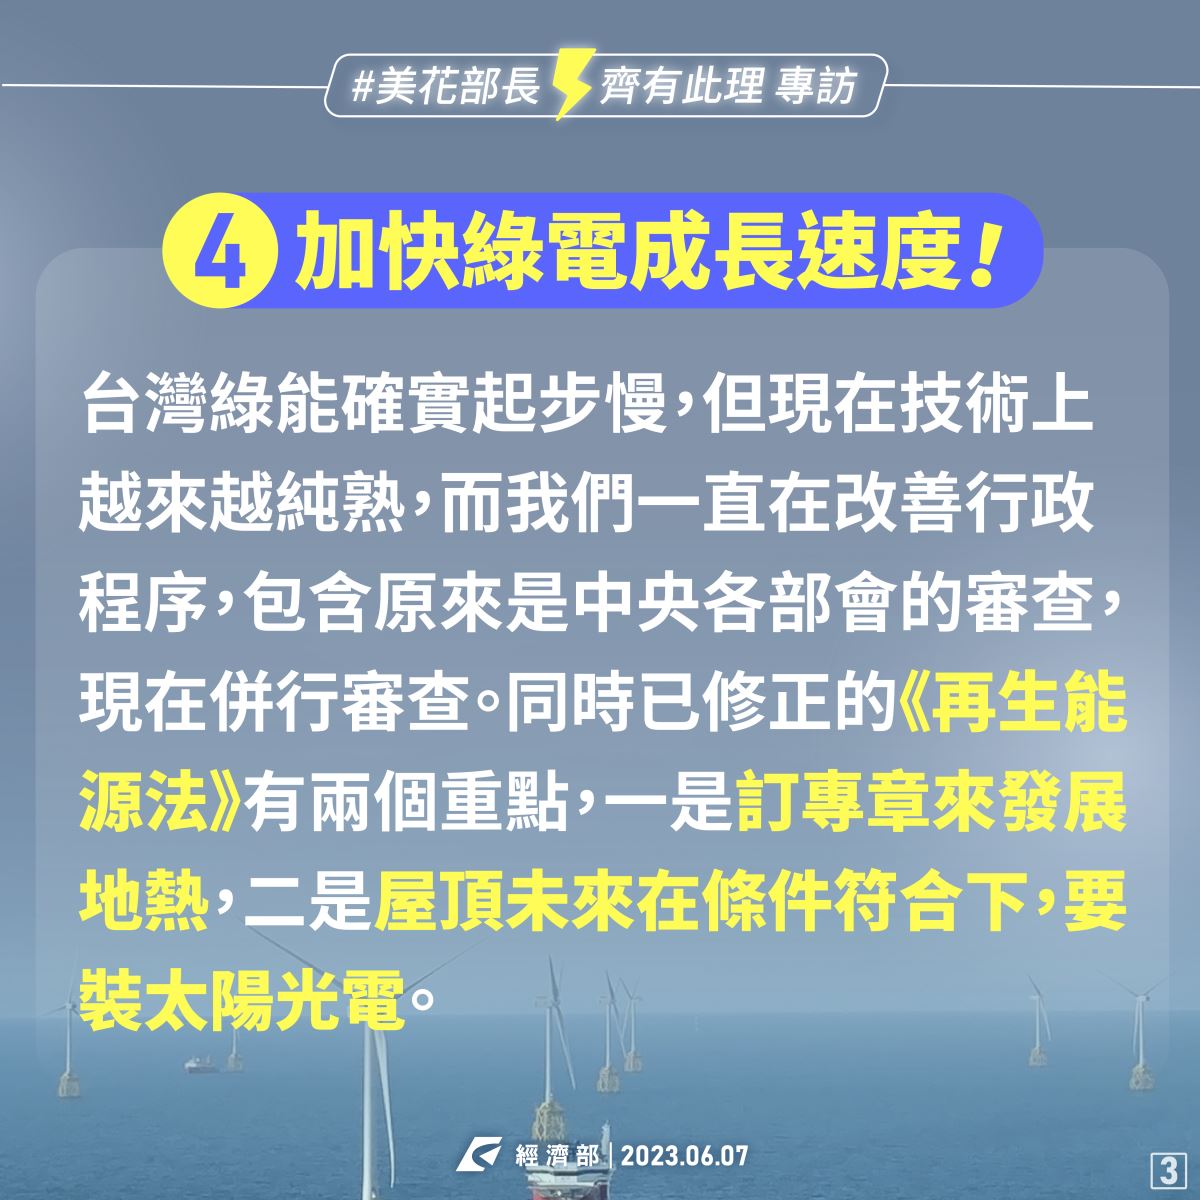 媒體報導台積電說台灣綠電不足圖卡3